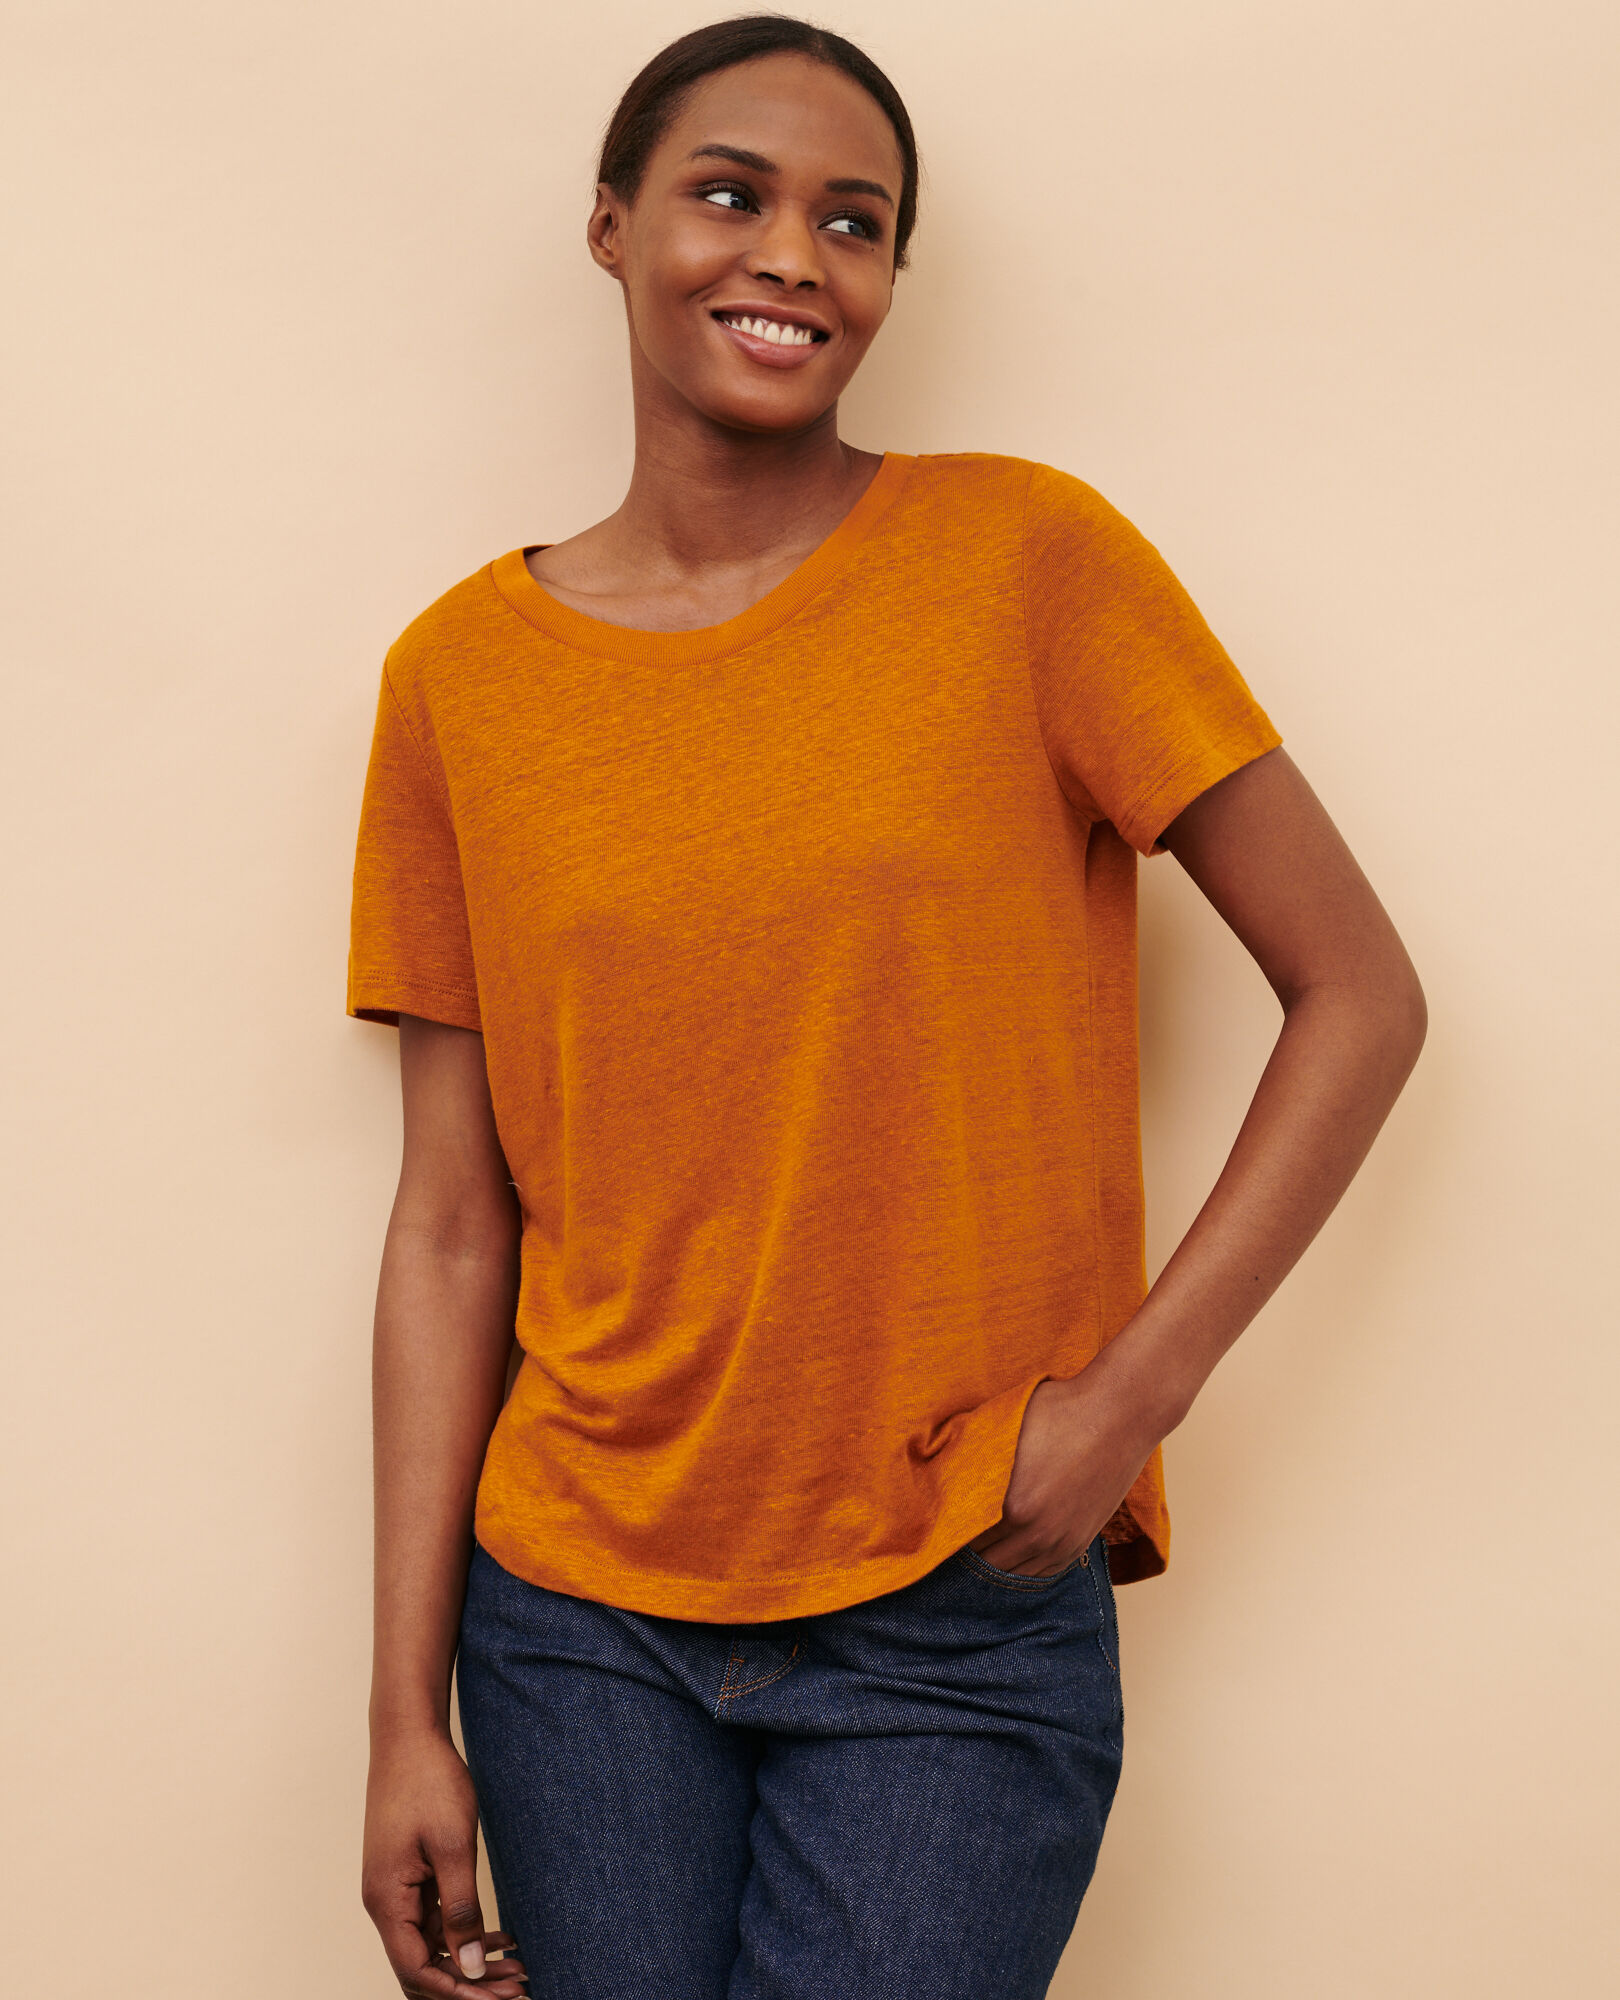 AMANDINE - T-Shirt mit Rundhalsausschnitt aus Leinen 29 orange 2ste055f05